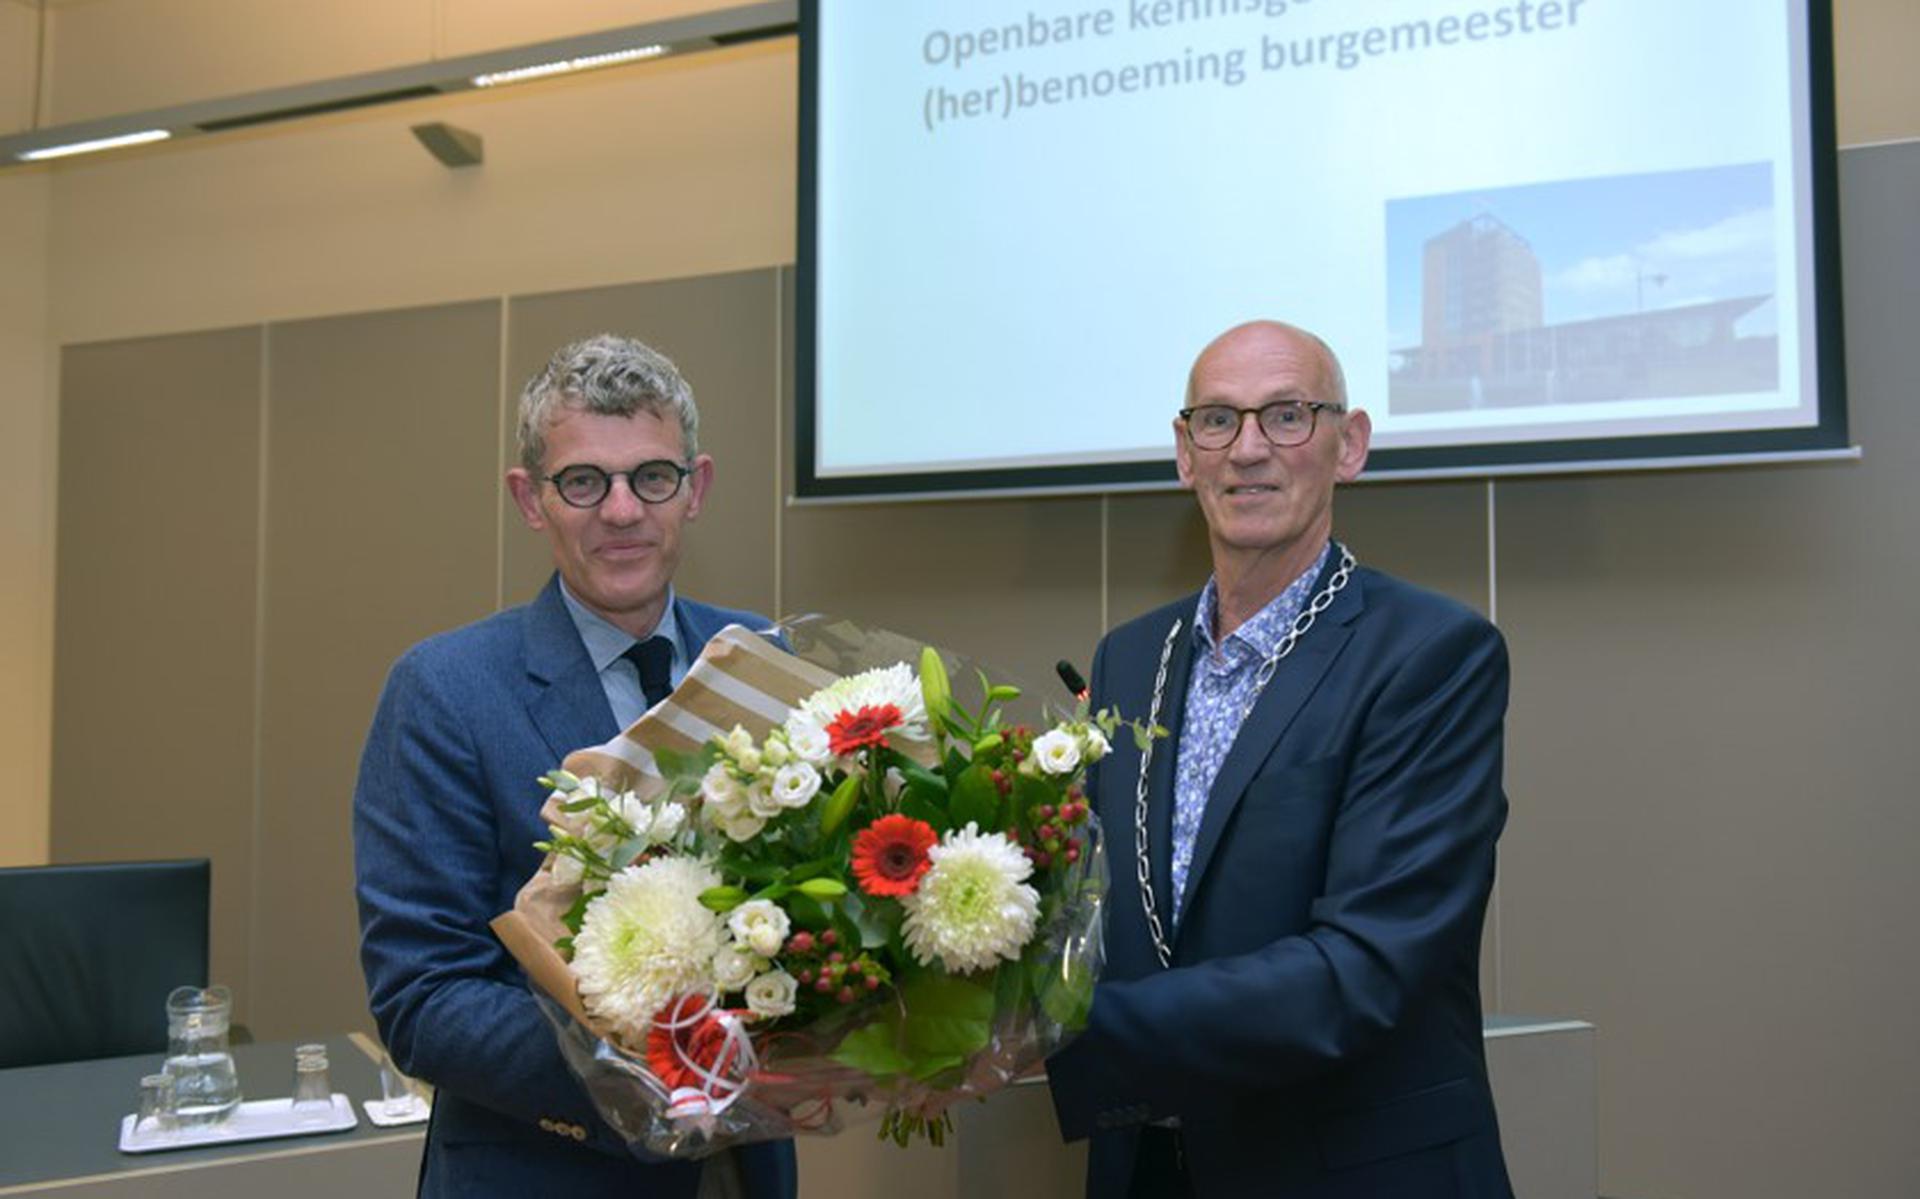 Burgemeester André van de Nadort krijgt bloemen van plaatsvervangend raadsvoorzitter Ton Mulder. Foto Lenus van der Broek